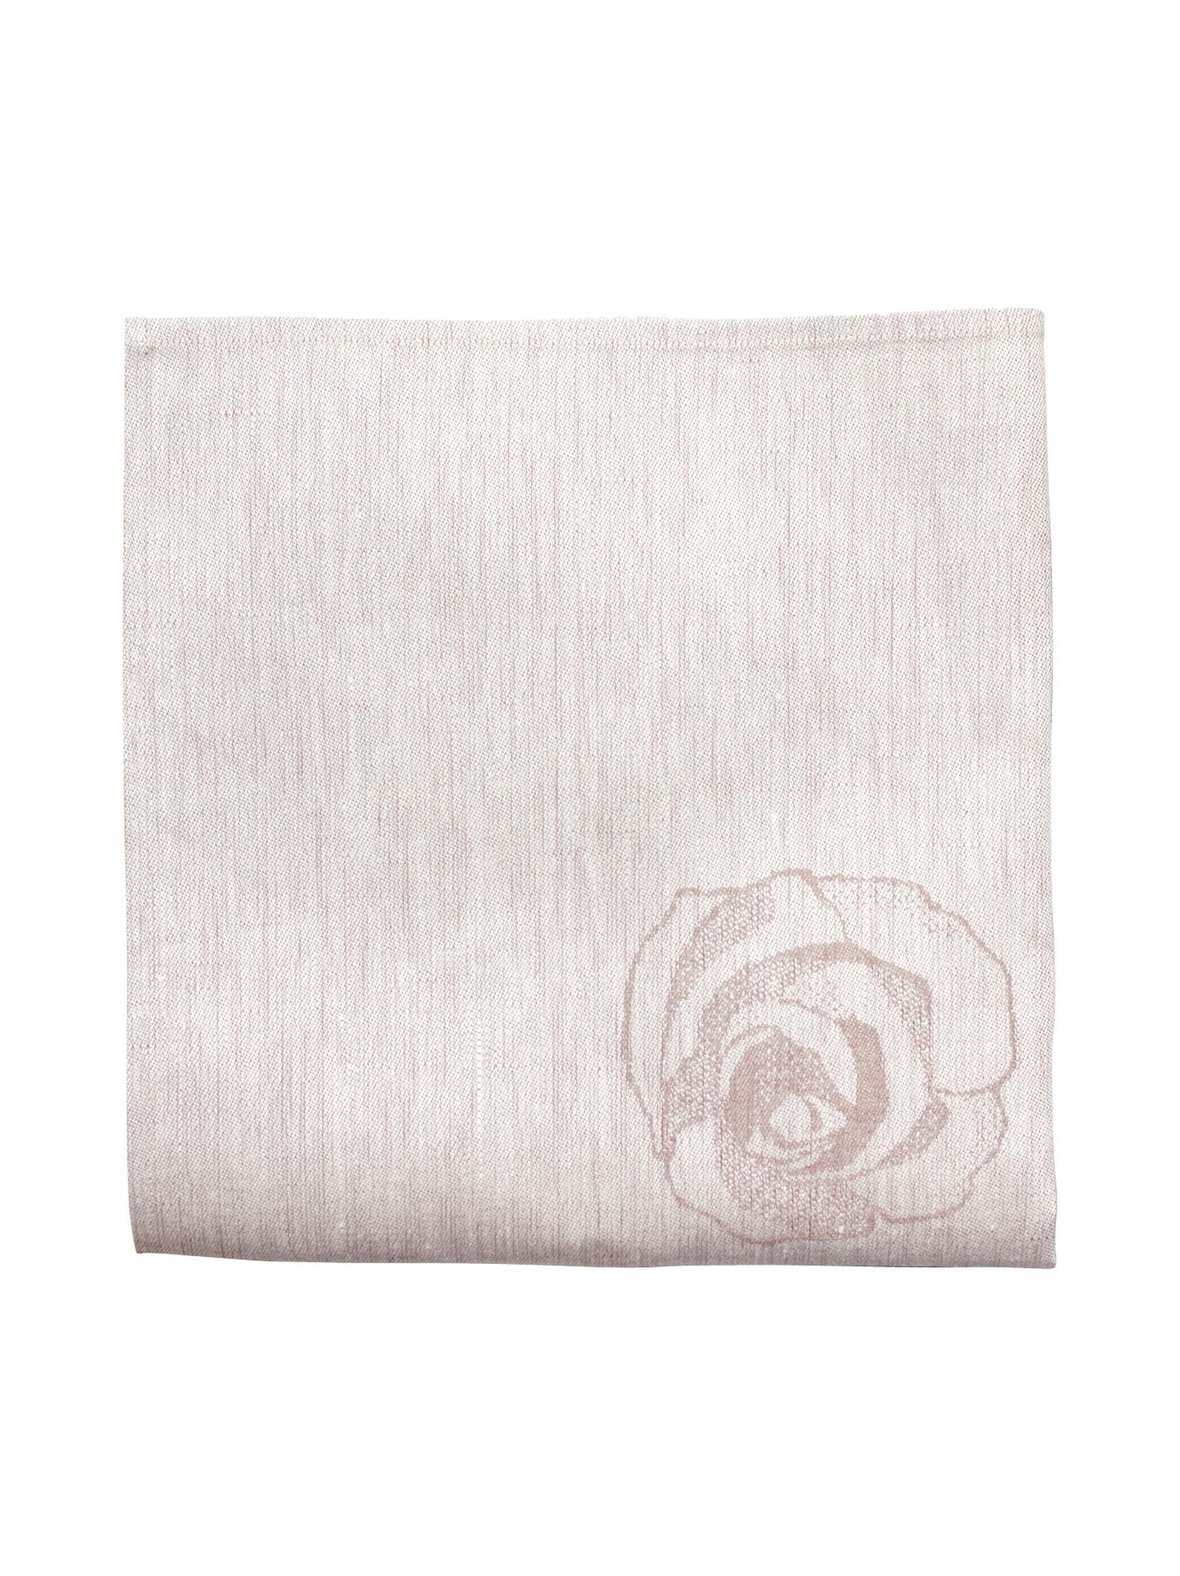 100 ruusua -pellavalautasliina 48 x 48 cm, Lapuan Kankurit